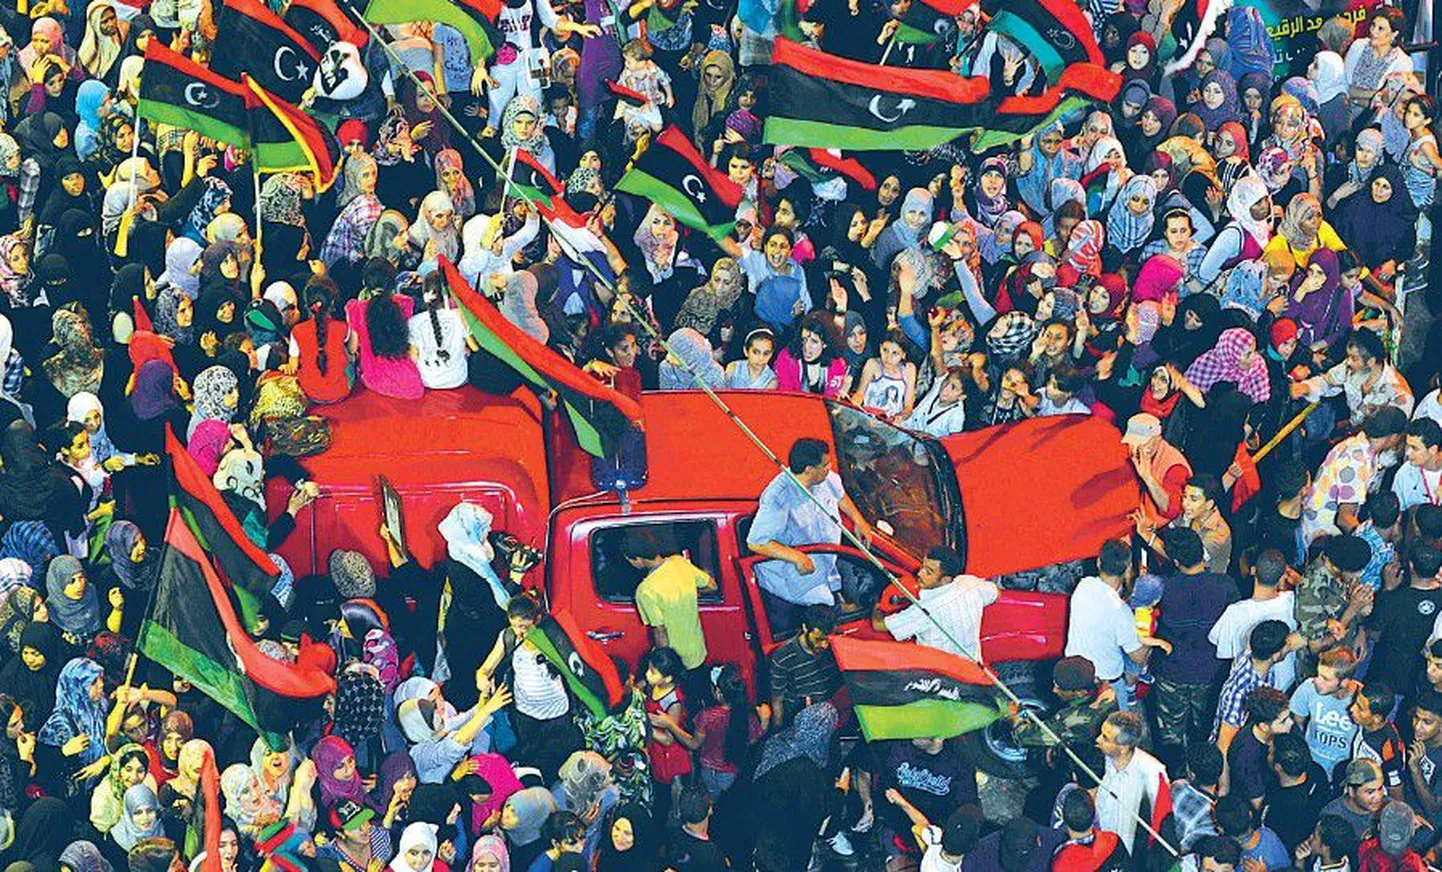 Тысячи ливийцев вчера вышли на улицы отраздновать свою победу — повстанцы достаточно легко взяли под свой контроль столицу Ливии Триполи.